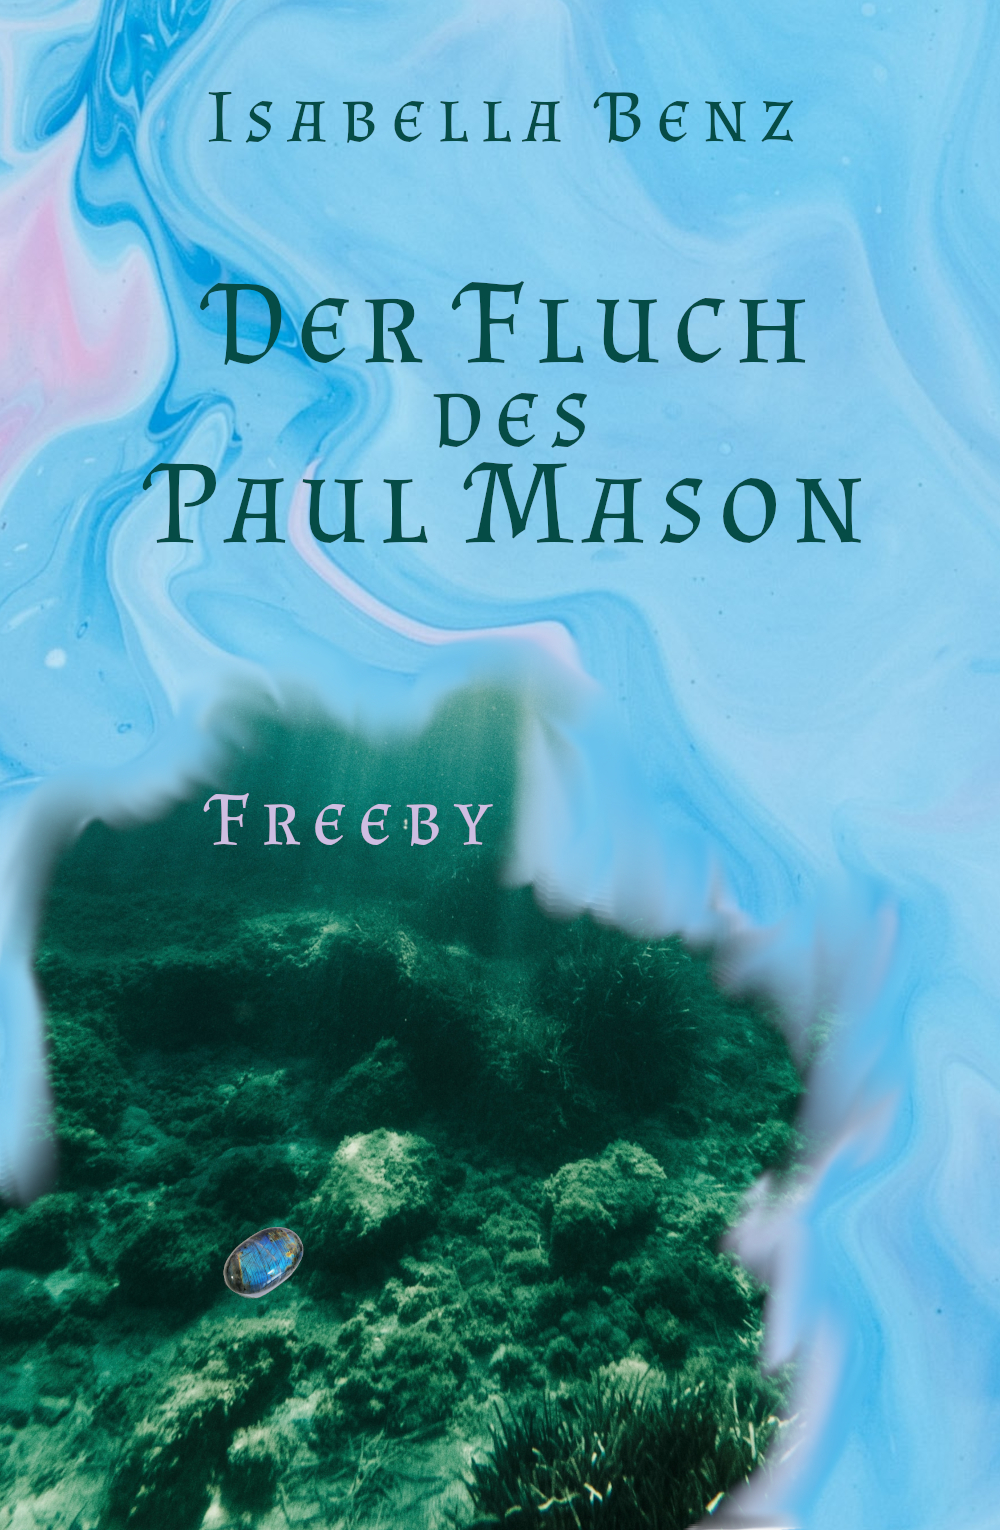 Cover des Freebys "Der Fluch des Paul Mason" von Isabella Benz: Blauer Watercolor Backround, rechts unten sieht man eine Unterwasserlandschaft, in der ein kleiner blauer Stein liegt.